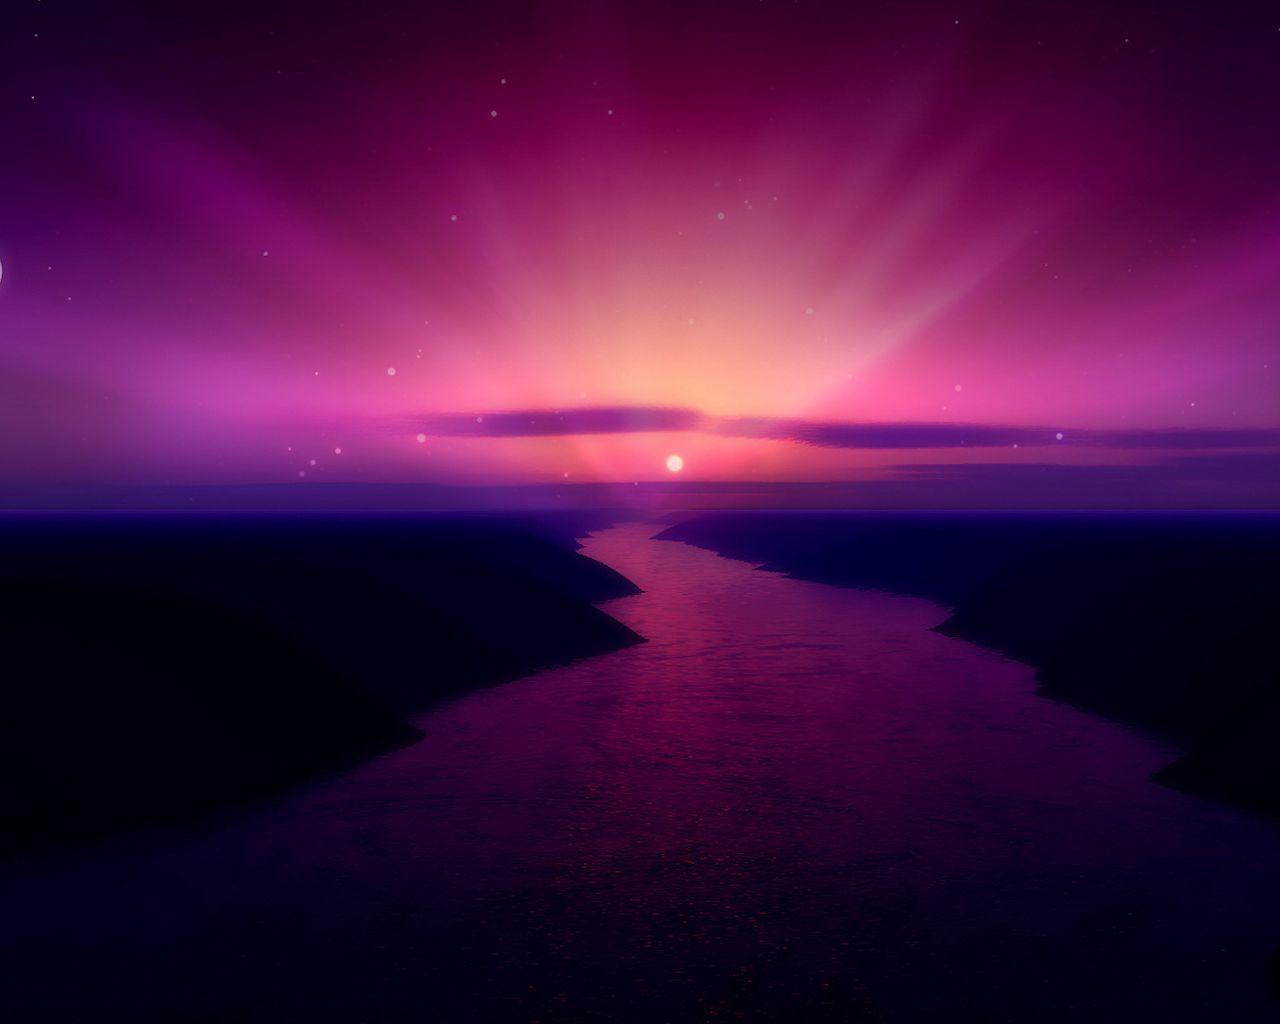 Purple fantasy landscape wallpaper Desktop Background. Scenery